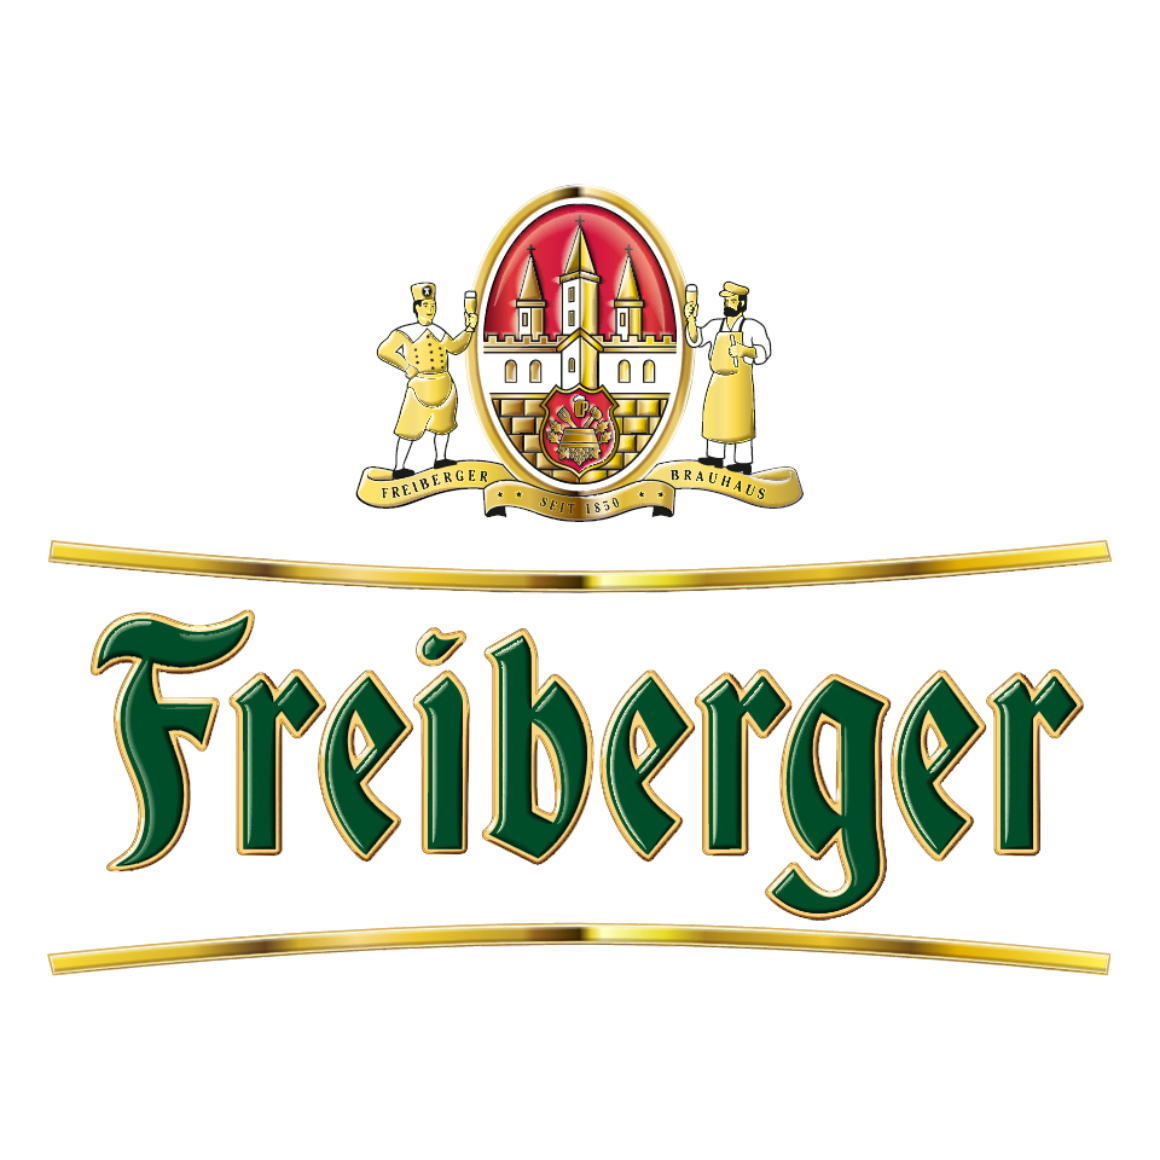 FreibergerBrauhaus_Logo3D